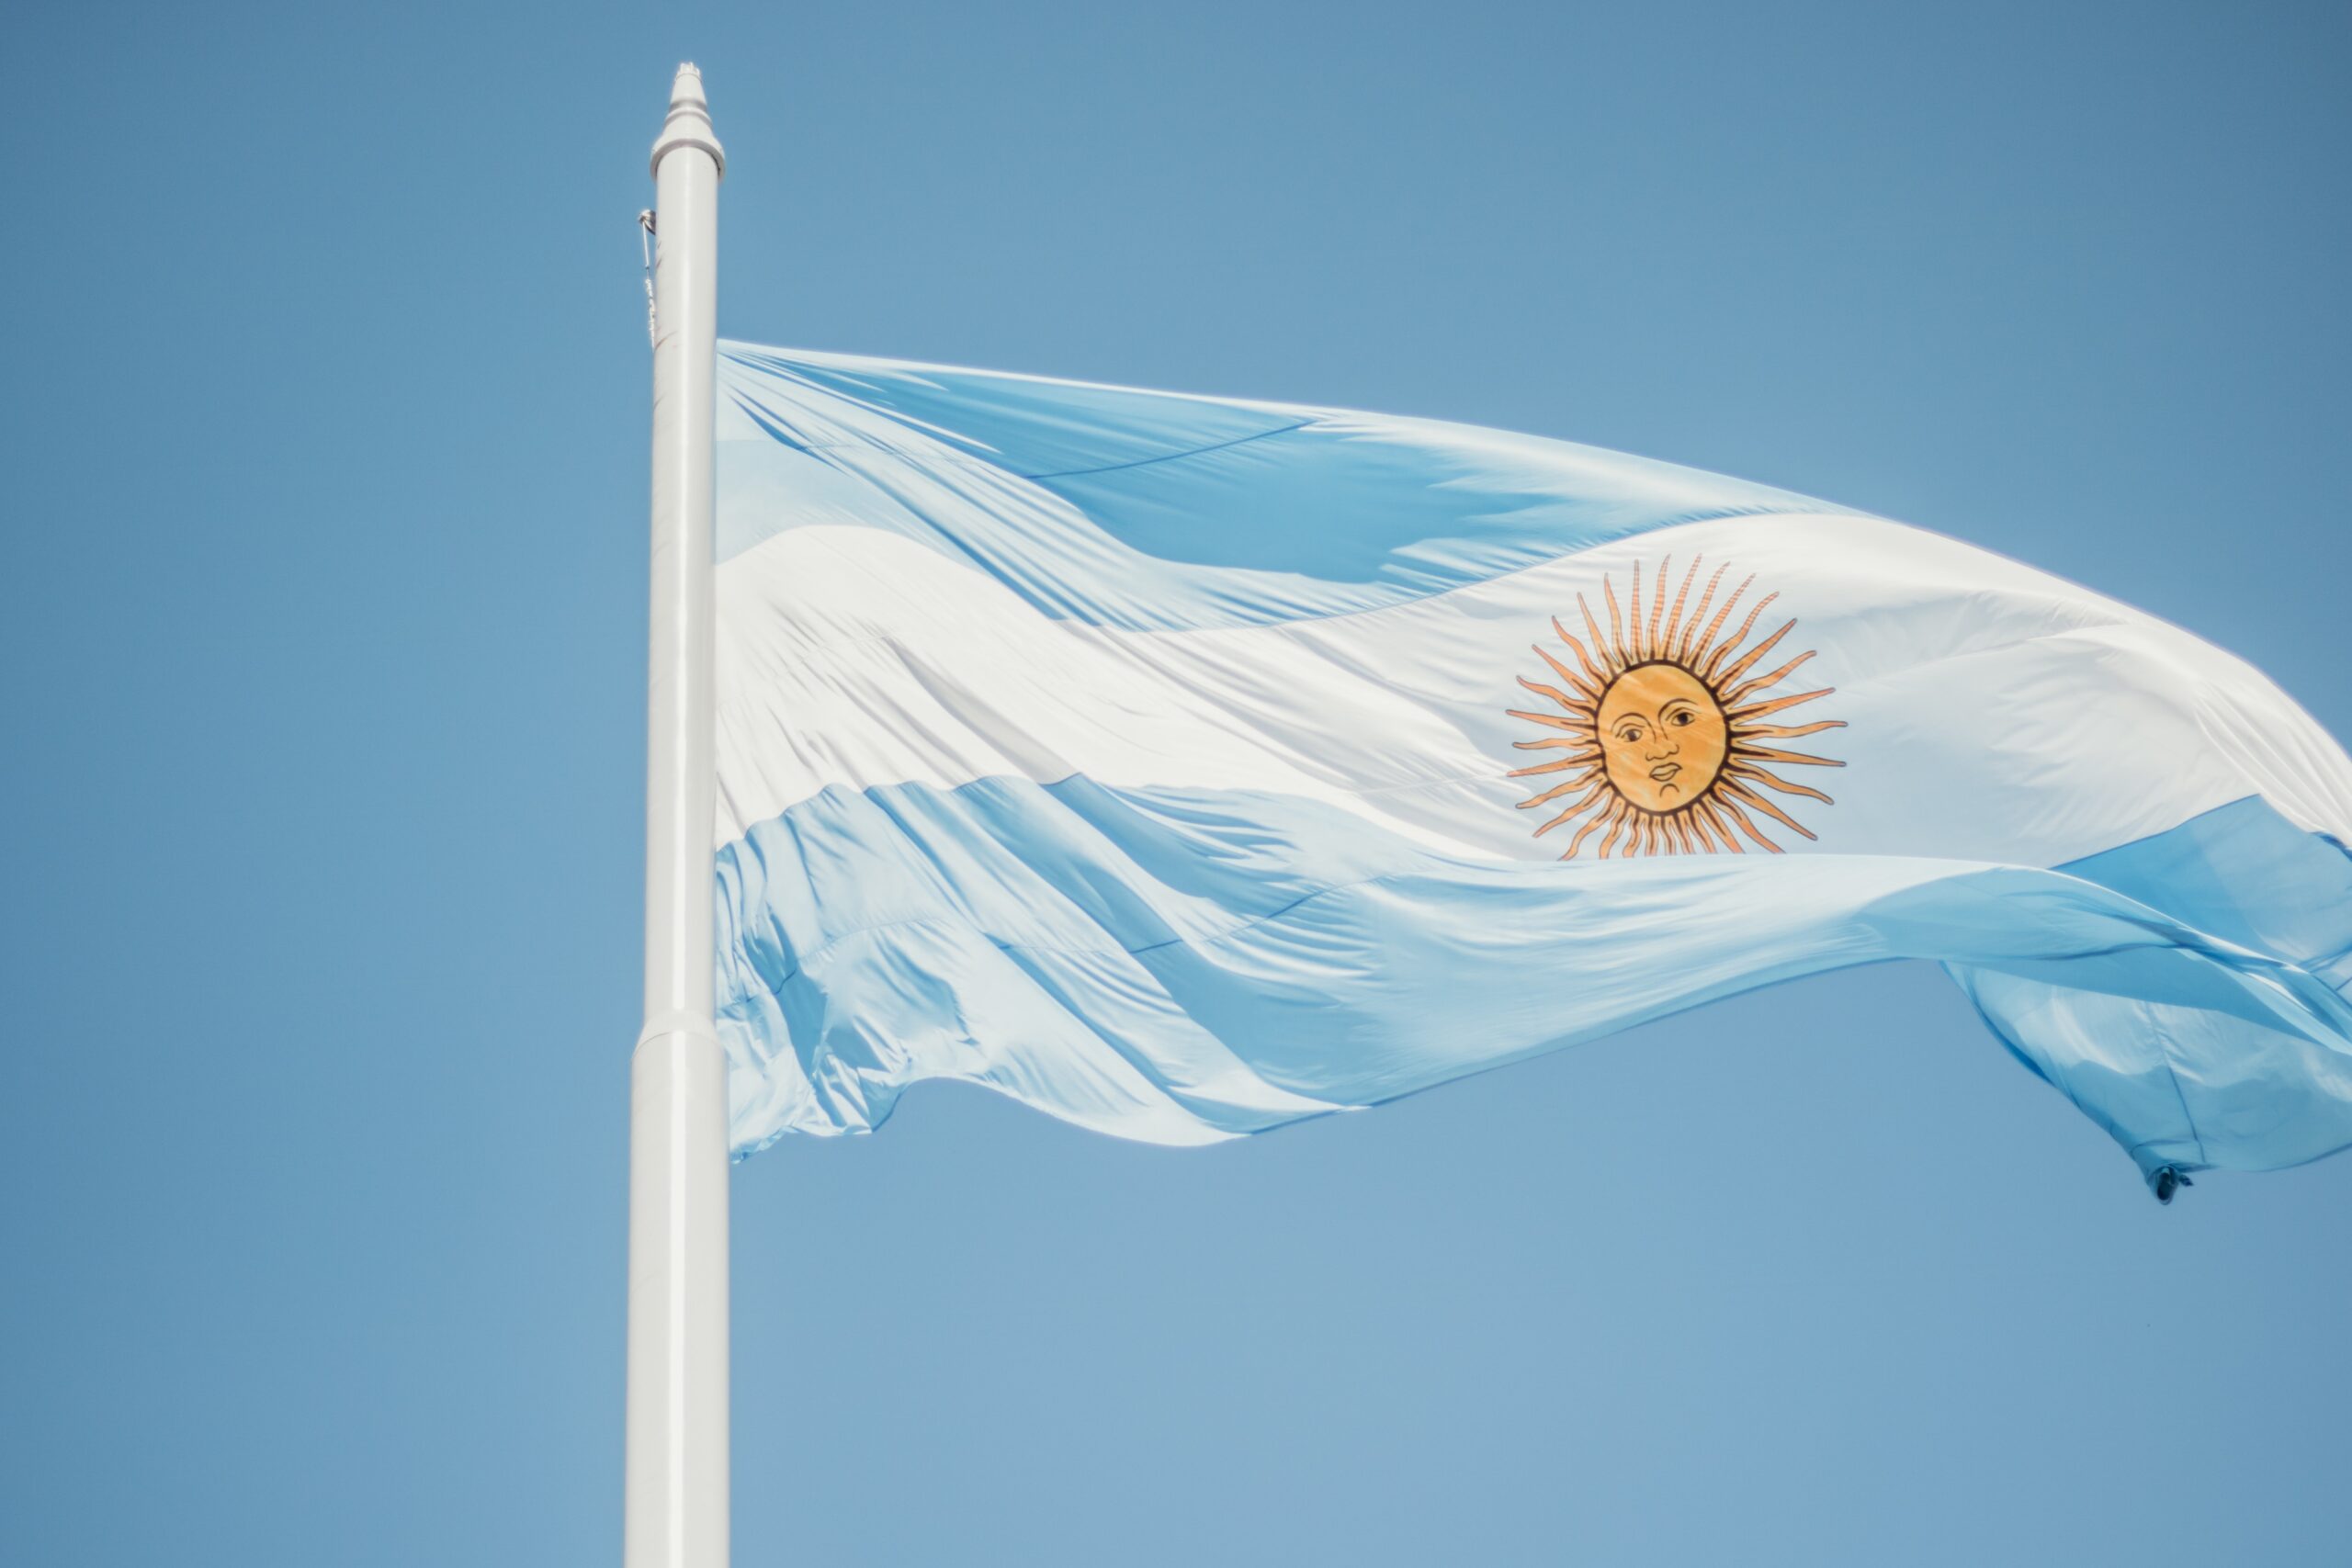 Eleições na Argentina: segundo turno ocorre neste domingo; saiba mais